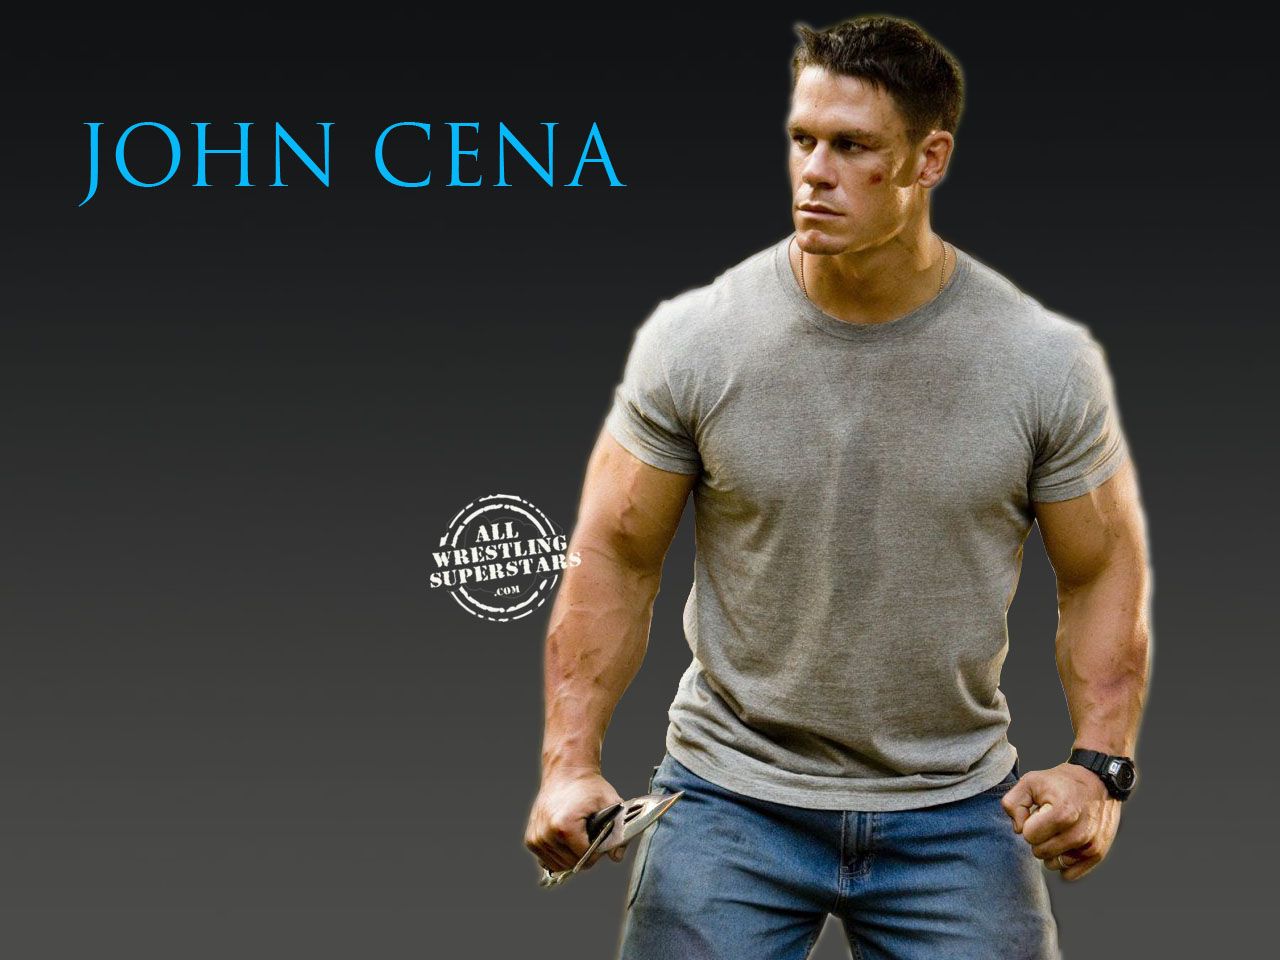 John Cena Wallpaper. John Cena Wallpaper Jan Cena HD Wallpaper and MLG John Cena Wallpaper